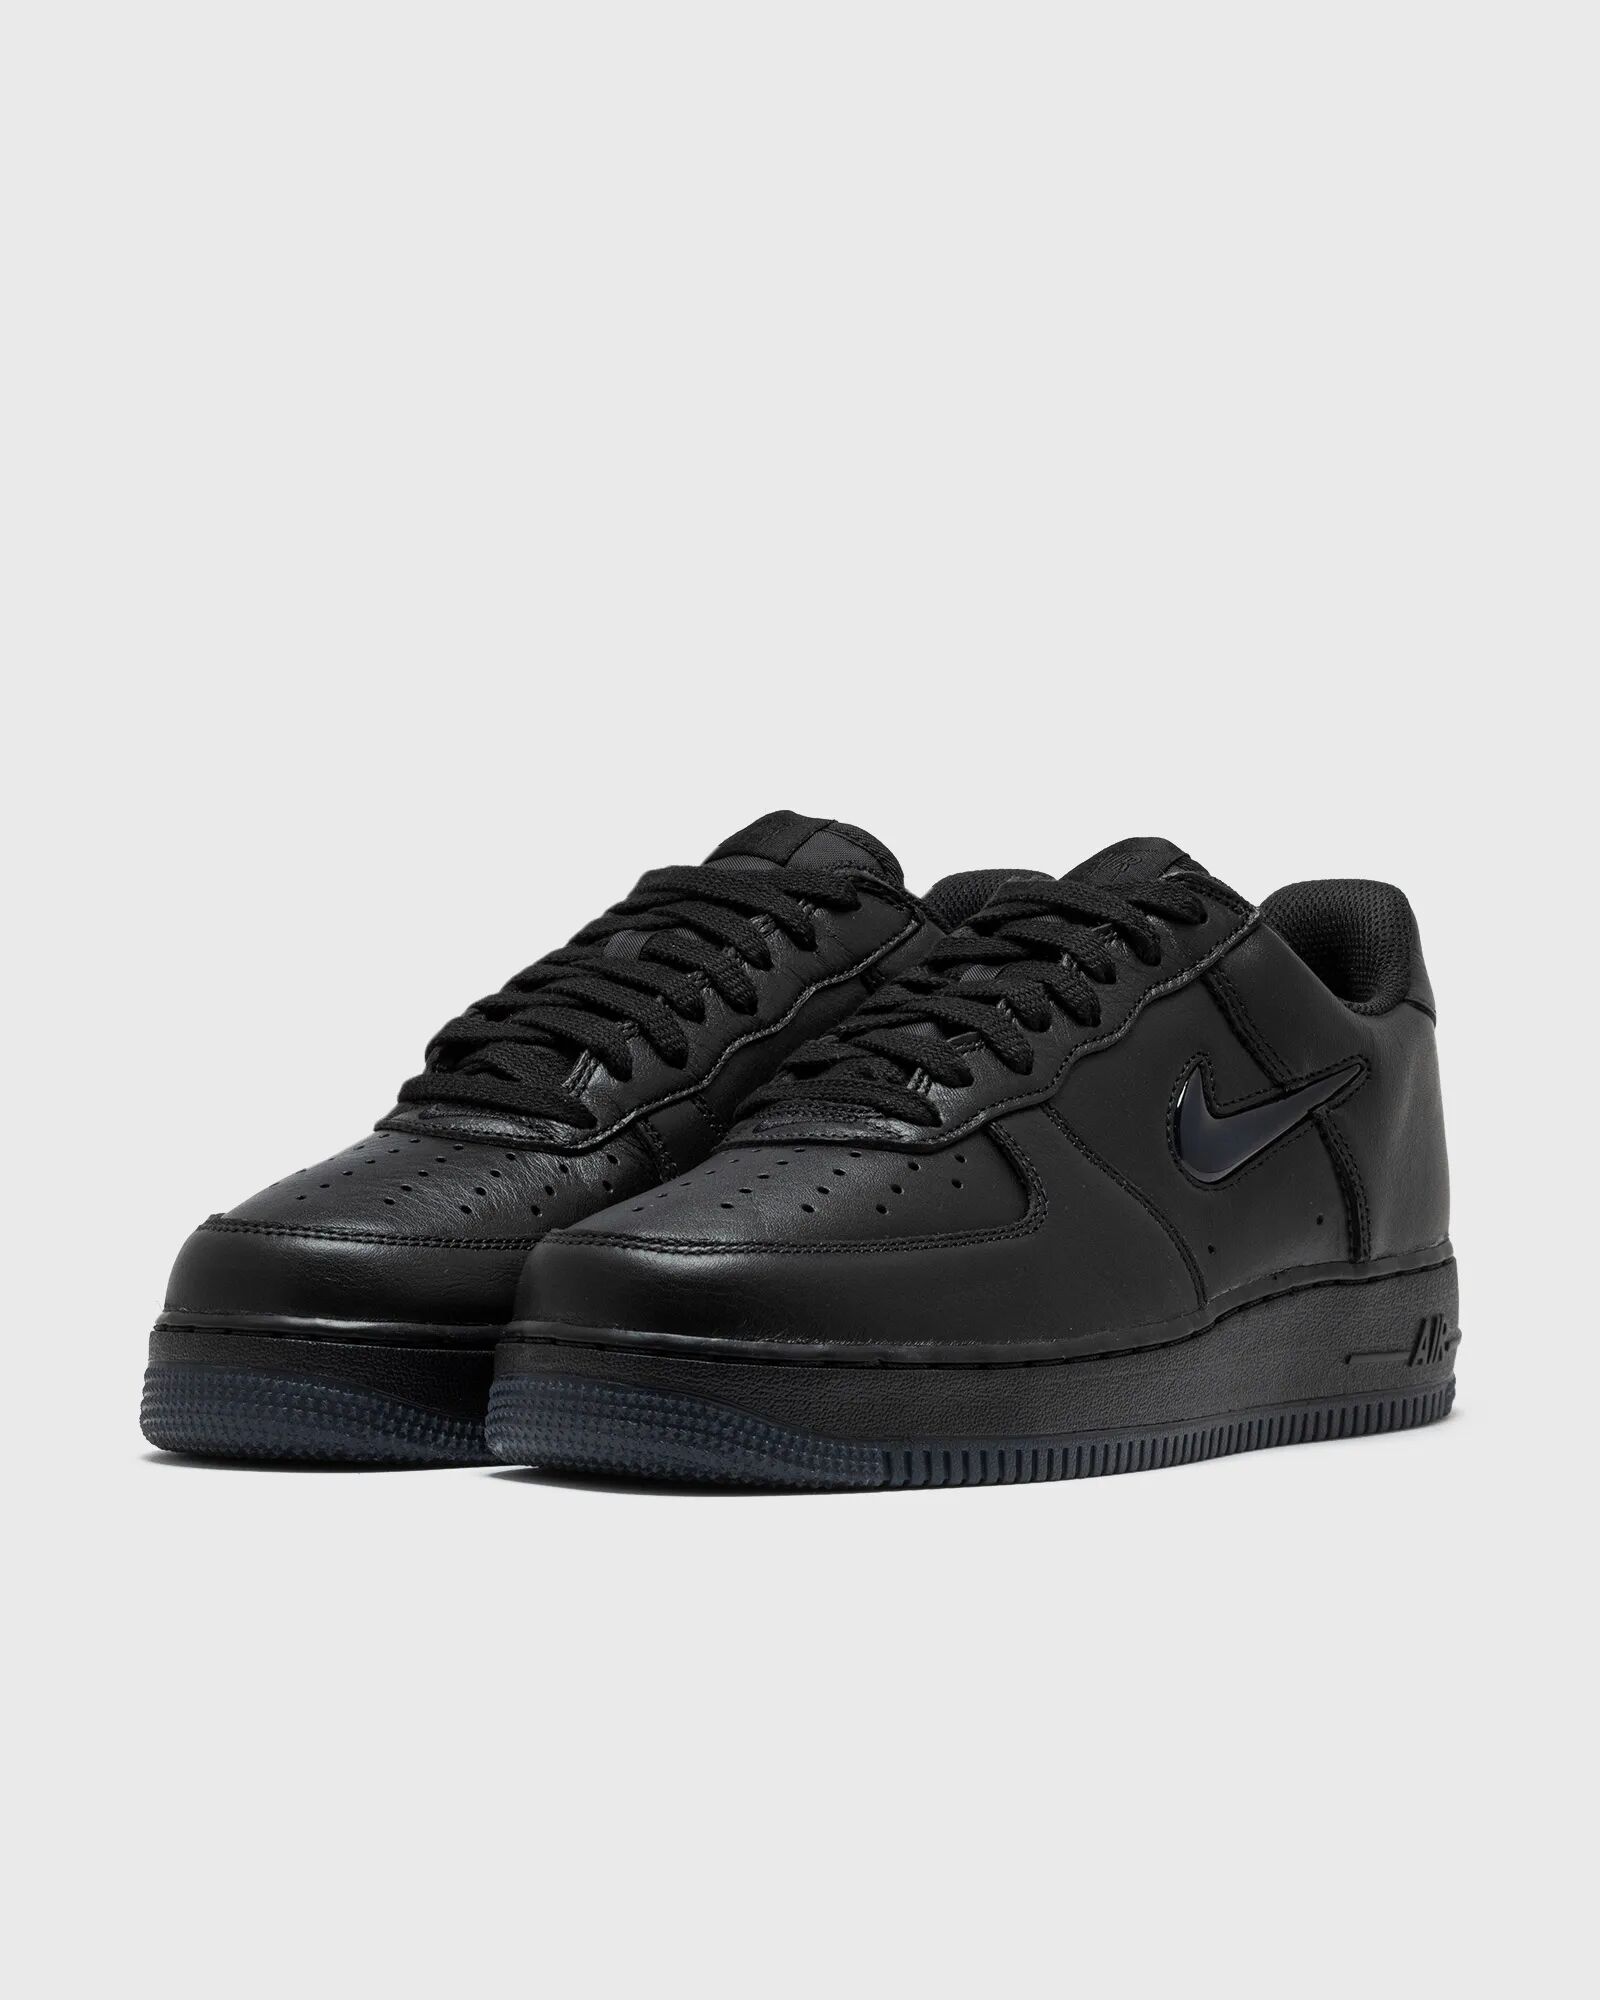 Nike Air Force 1 Low Retro Men's Shoes men Lowtop black en taille:45